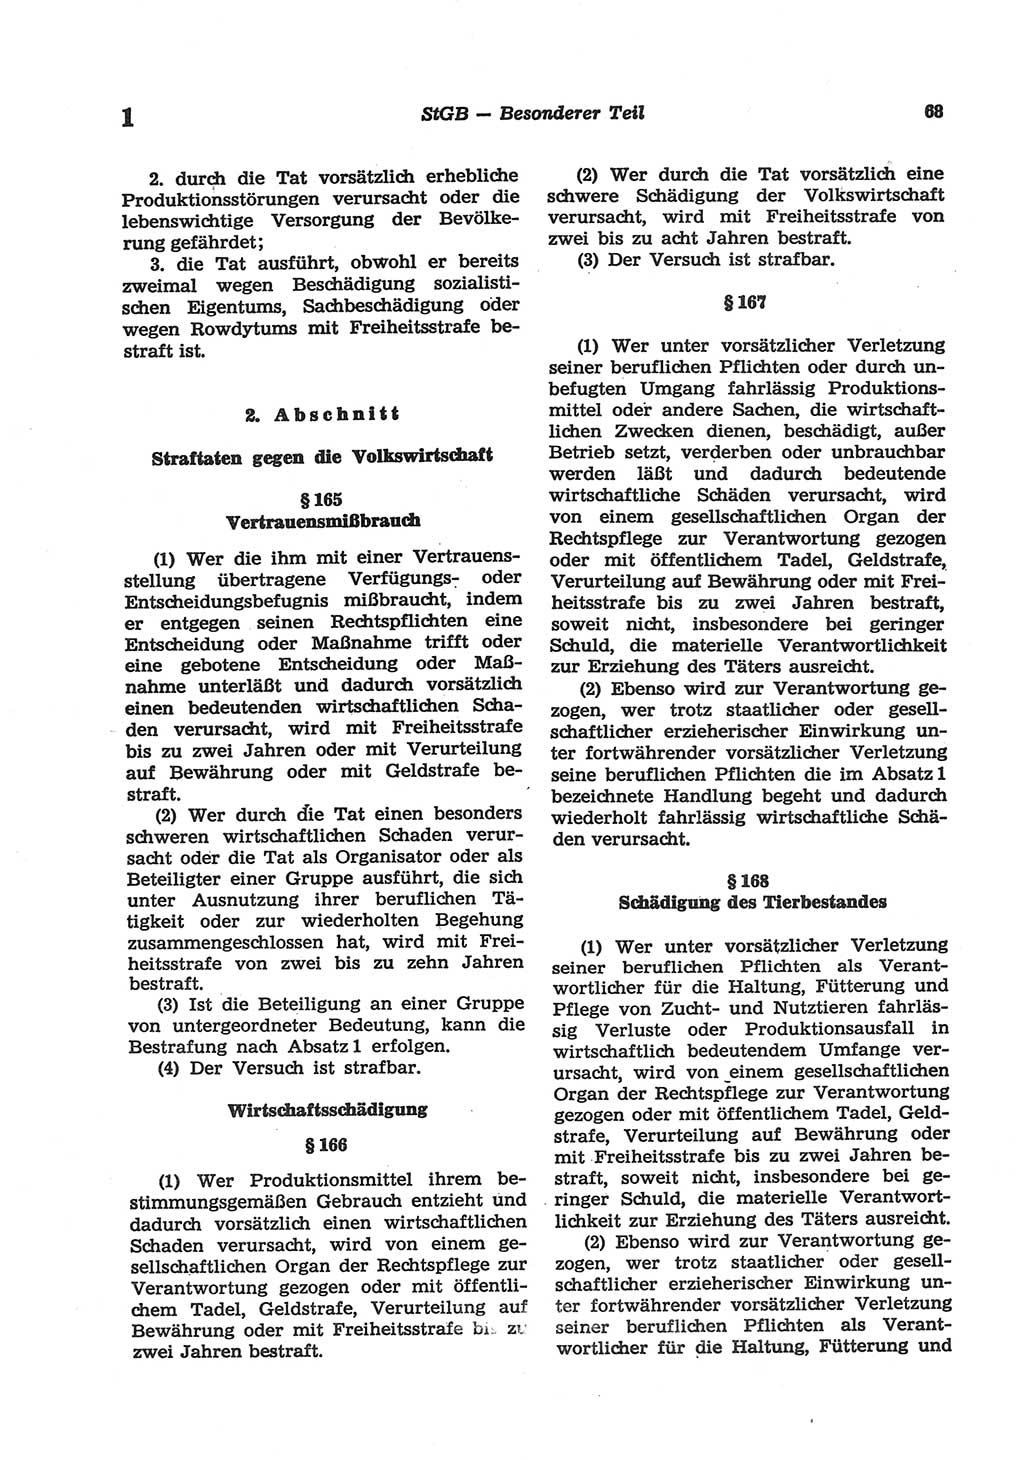 Strafgesetzbuch (StGB) der Deutschen Demokratischen Republik (DDR) und angrenzende Gesetze und Bestimmungen 1977, Seite 68 (StGB DDR Ges. Best. 1977, S. 68)